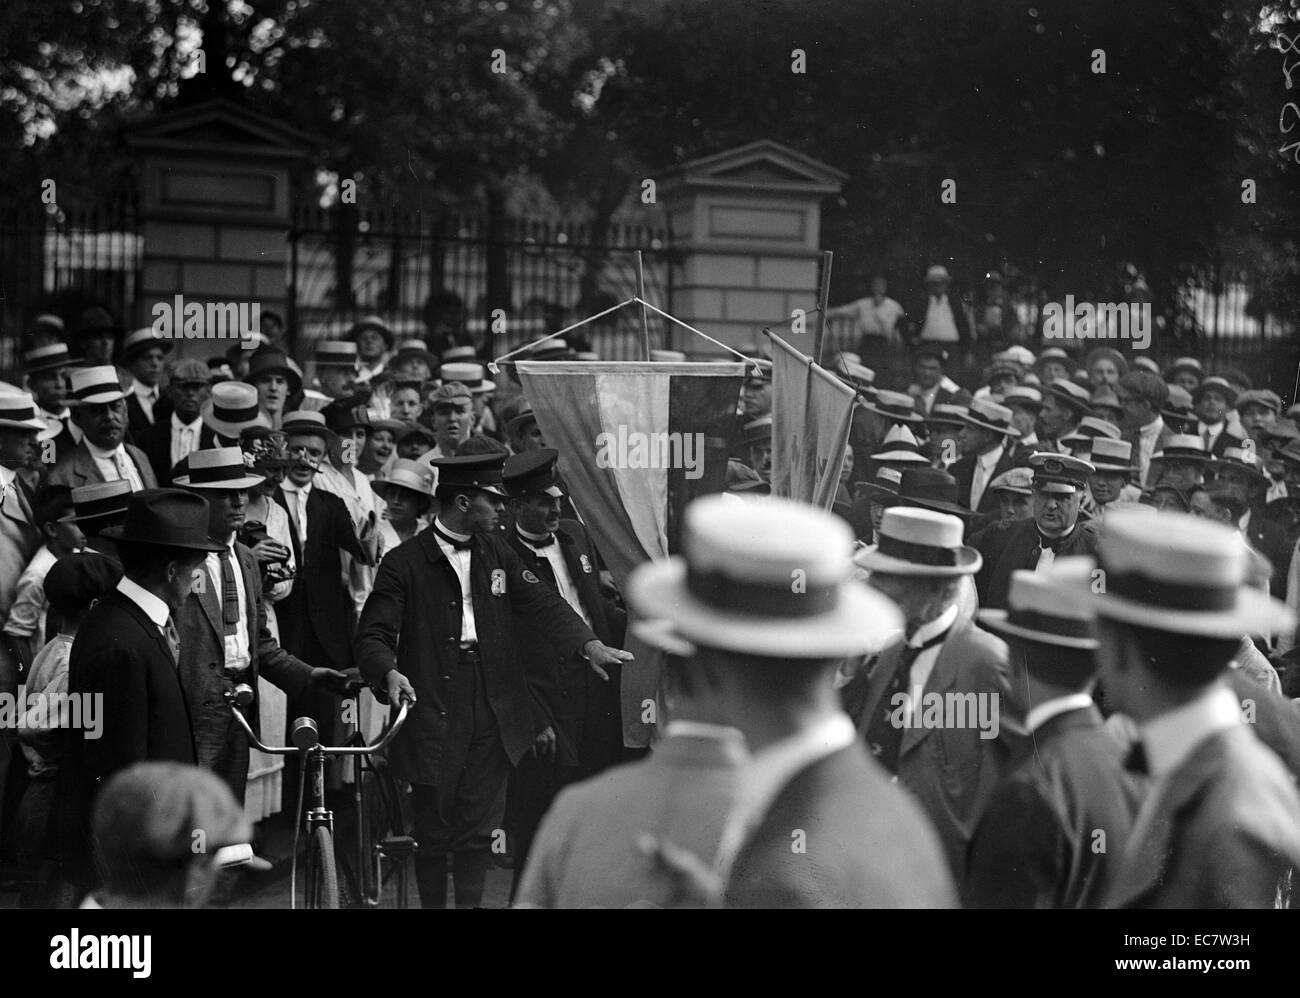 Le suffrage des femmes et des émeutes. Les femmes qui luttent pour leur droit de vote dans les années 1910. Banque D'Images